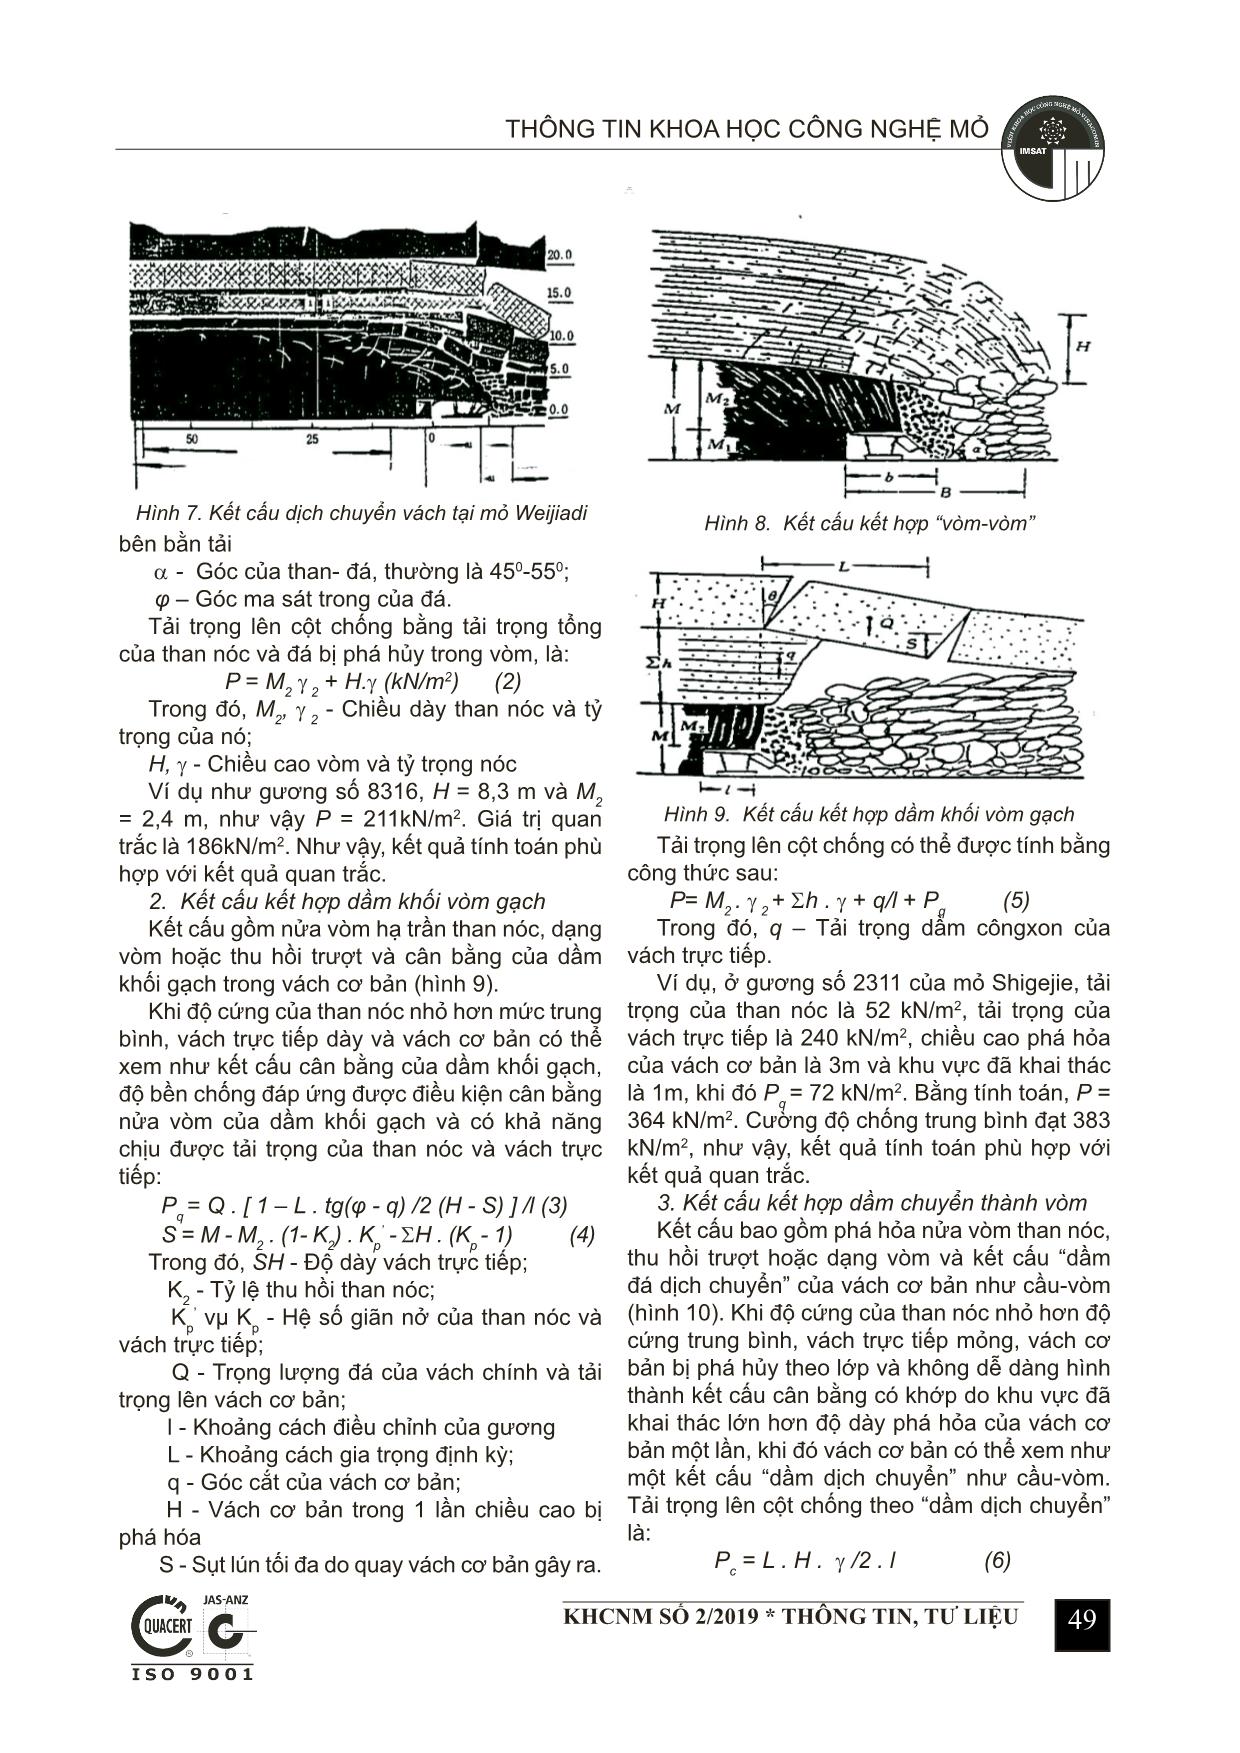 Nghiên cứu quy luật dịch chuyển than - đá và biện pháp kiểm soát gương hạ trần than nóc trang 3